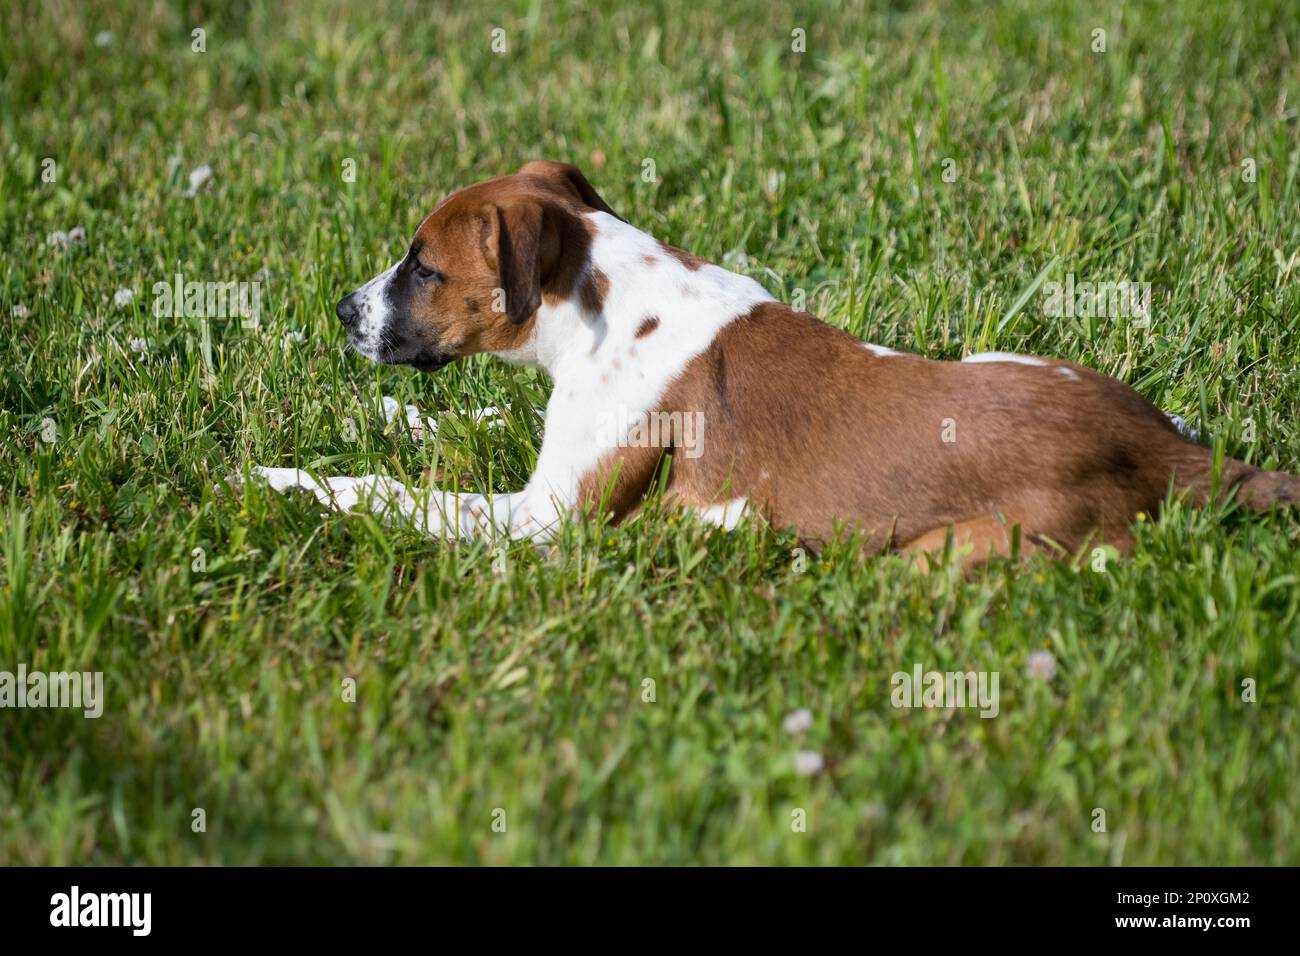 Cucciolo marrone e bianco nell'erba Foto Stock